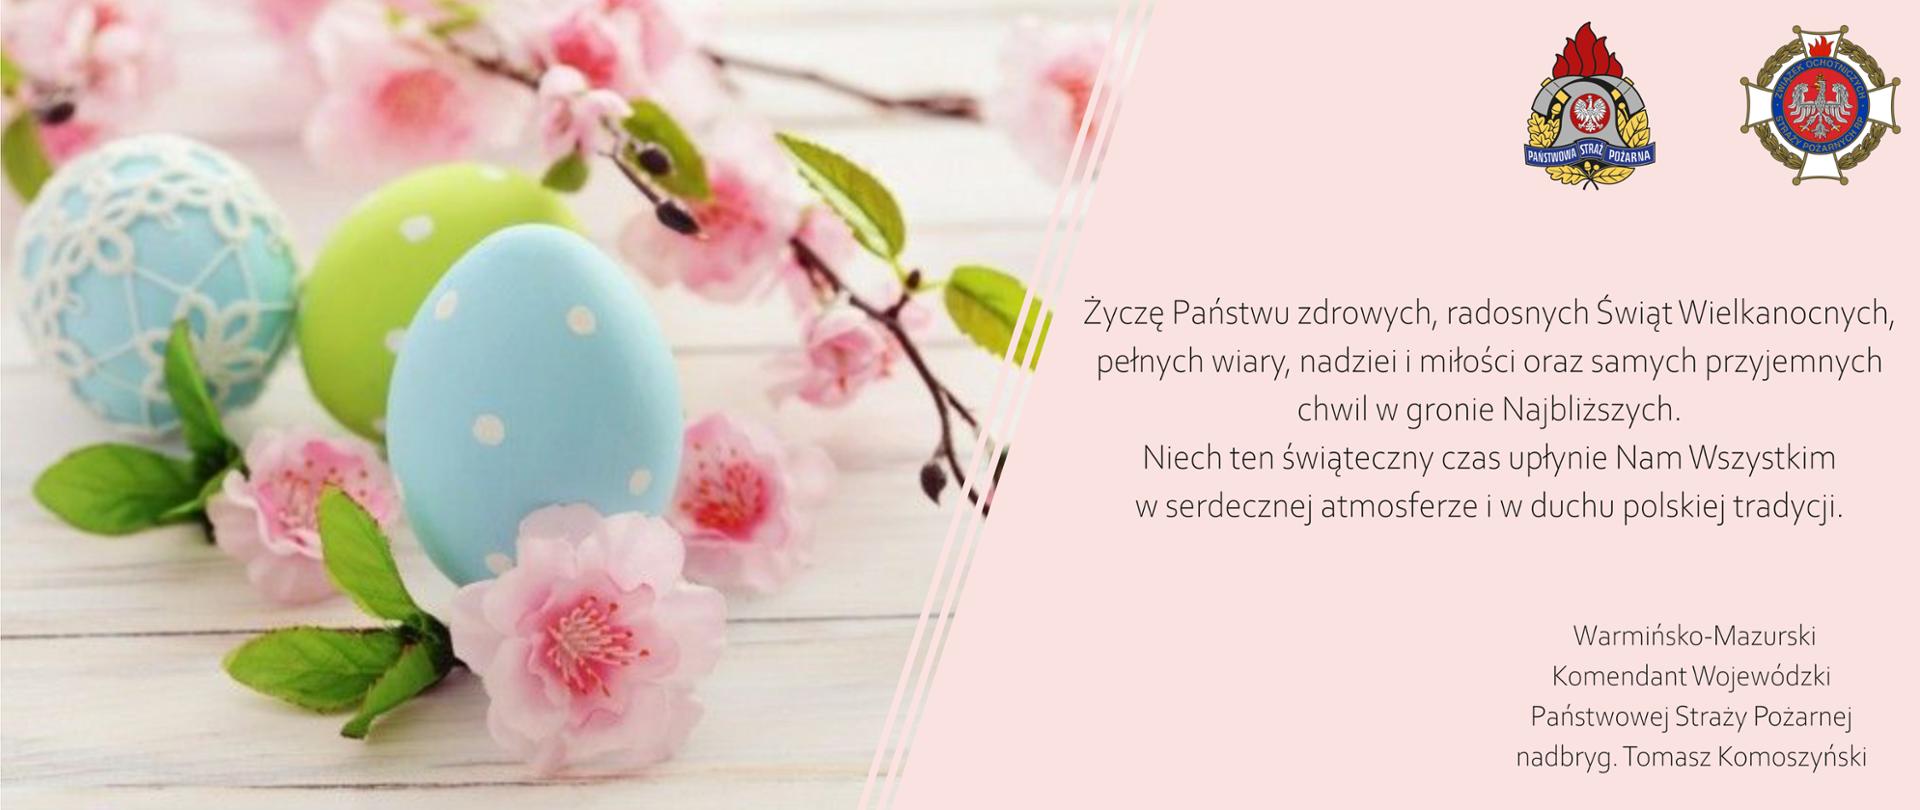 Życzenia Wielkanocne Warmińsko-Mazurskiego Komendanta Wojewódzkiego PSP, obok życzeń widoczne kolorowe pisanki